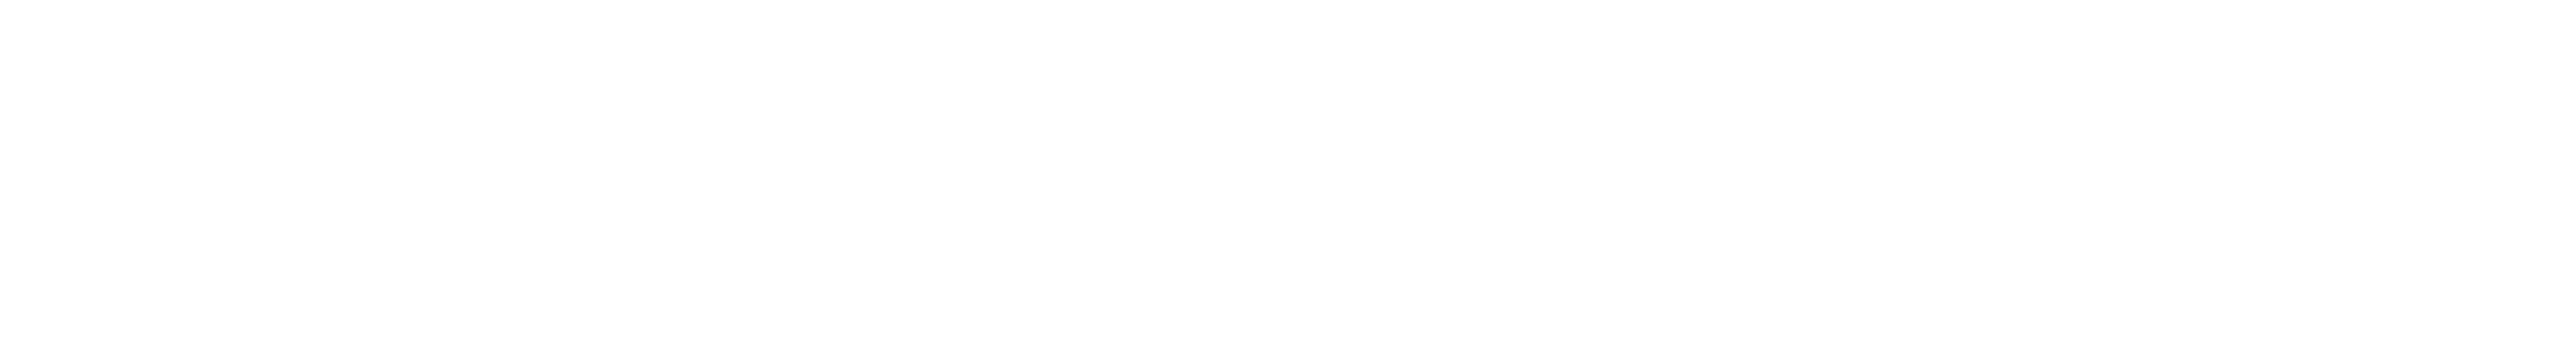 SpringPeak Logos -V1W